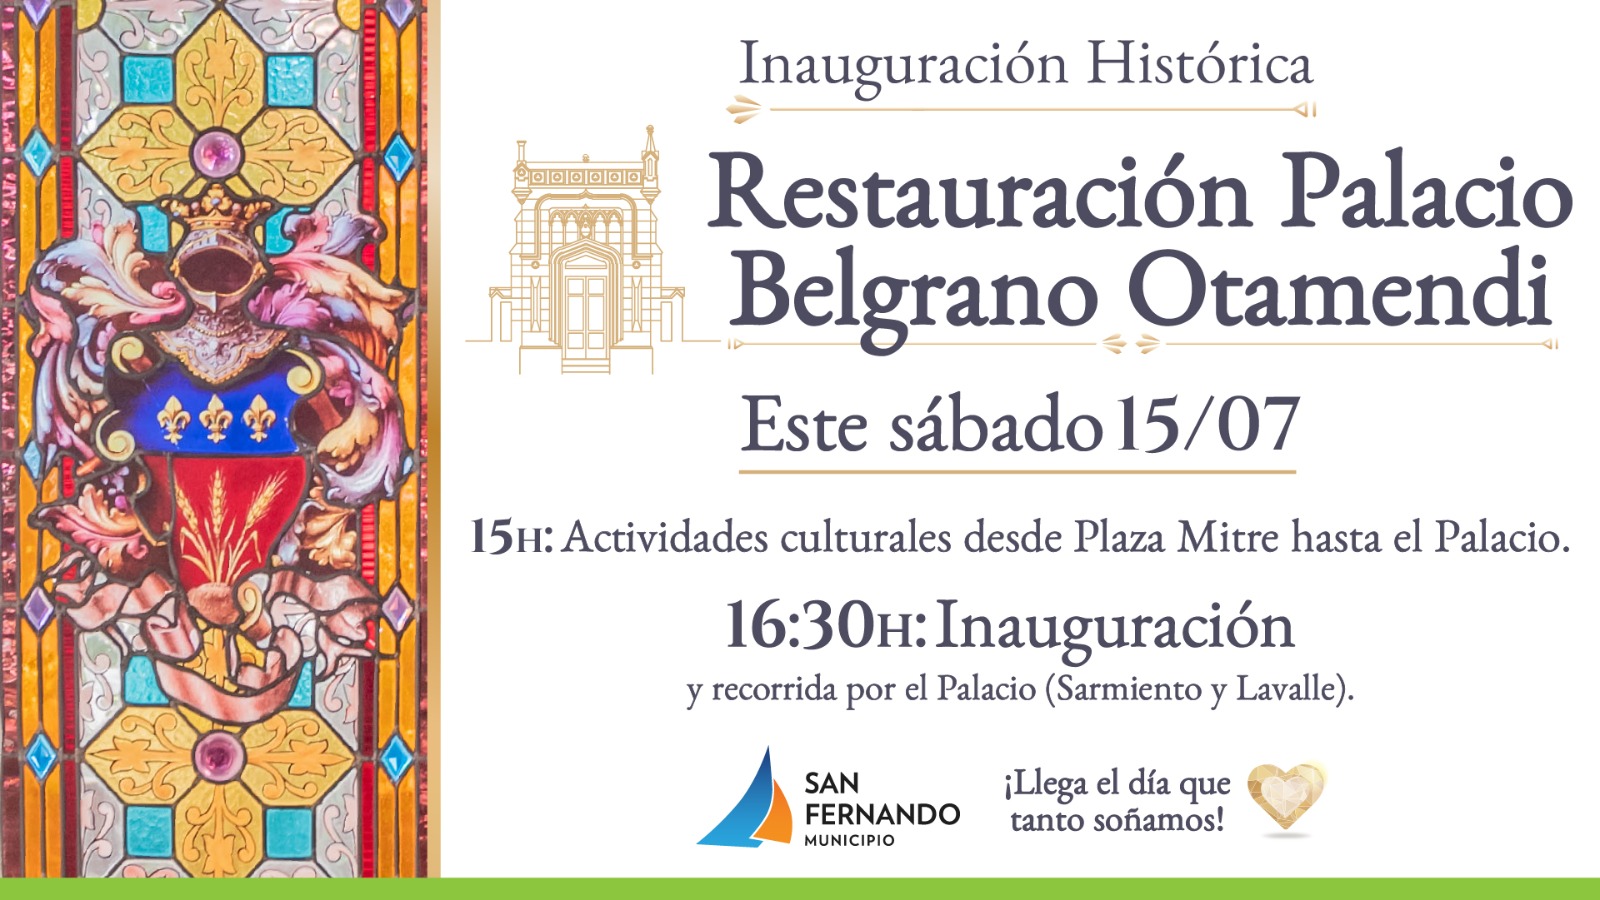 Inauguración Histórica Palacio Belgrano Otamendi